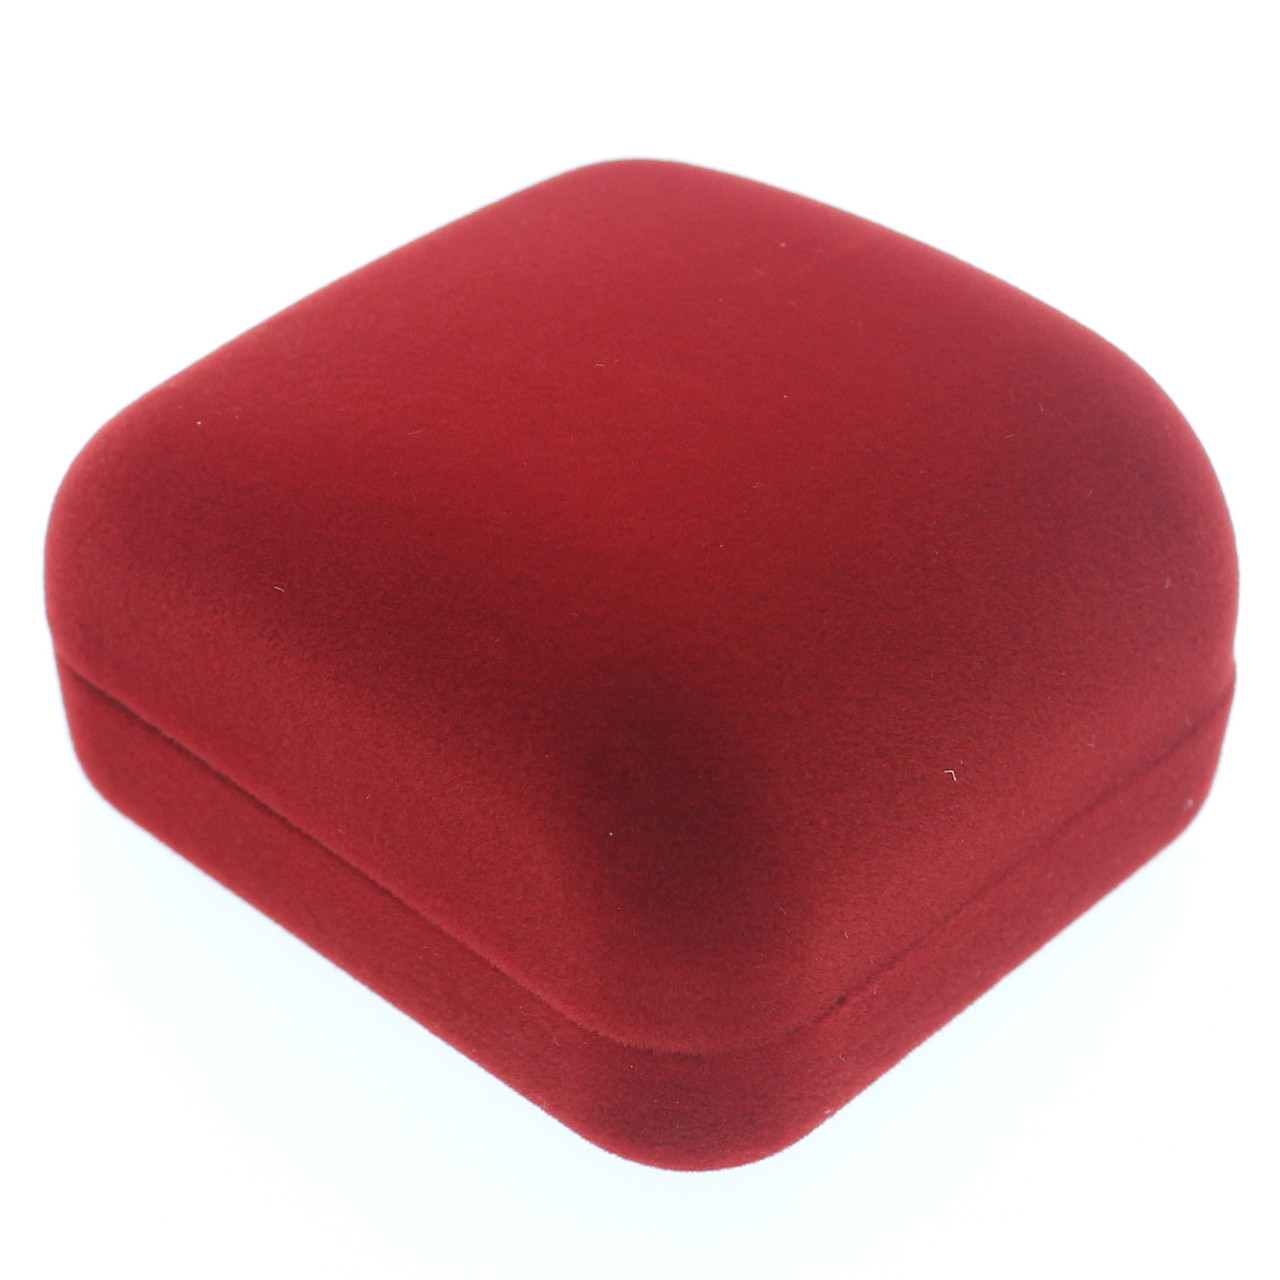 Футляр классика квадратный красный бархат для ювелирных изделий под кольцо или украшения размер 55 Х55 Х 35 мм